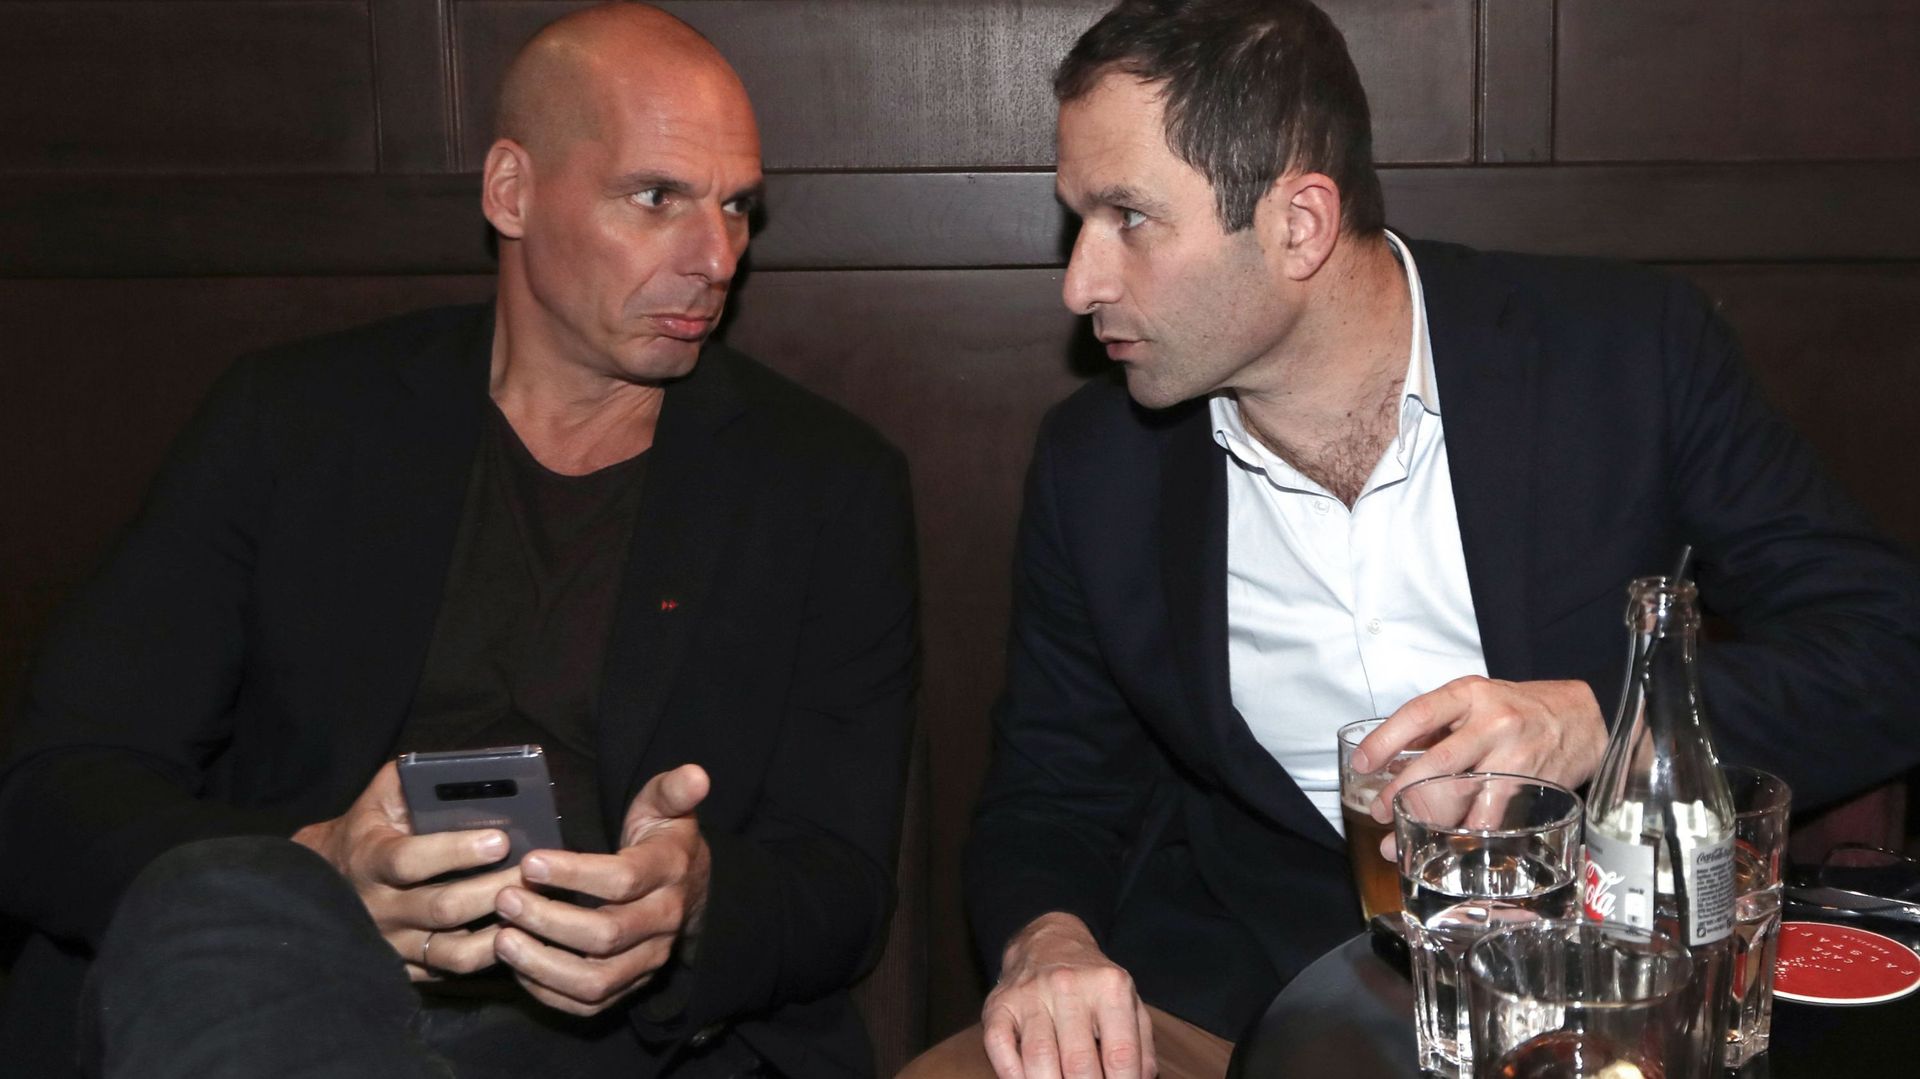 benoit-hamon-et-yanis-varoufakis-appellent-les-mouvements-de-gauche-a-s-unir-pour-les-elections-europeennes